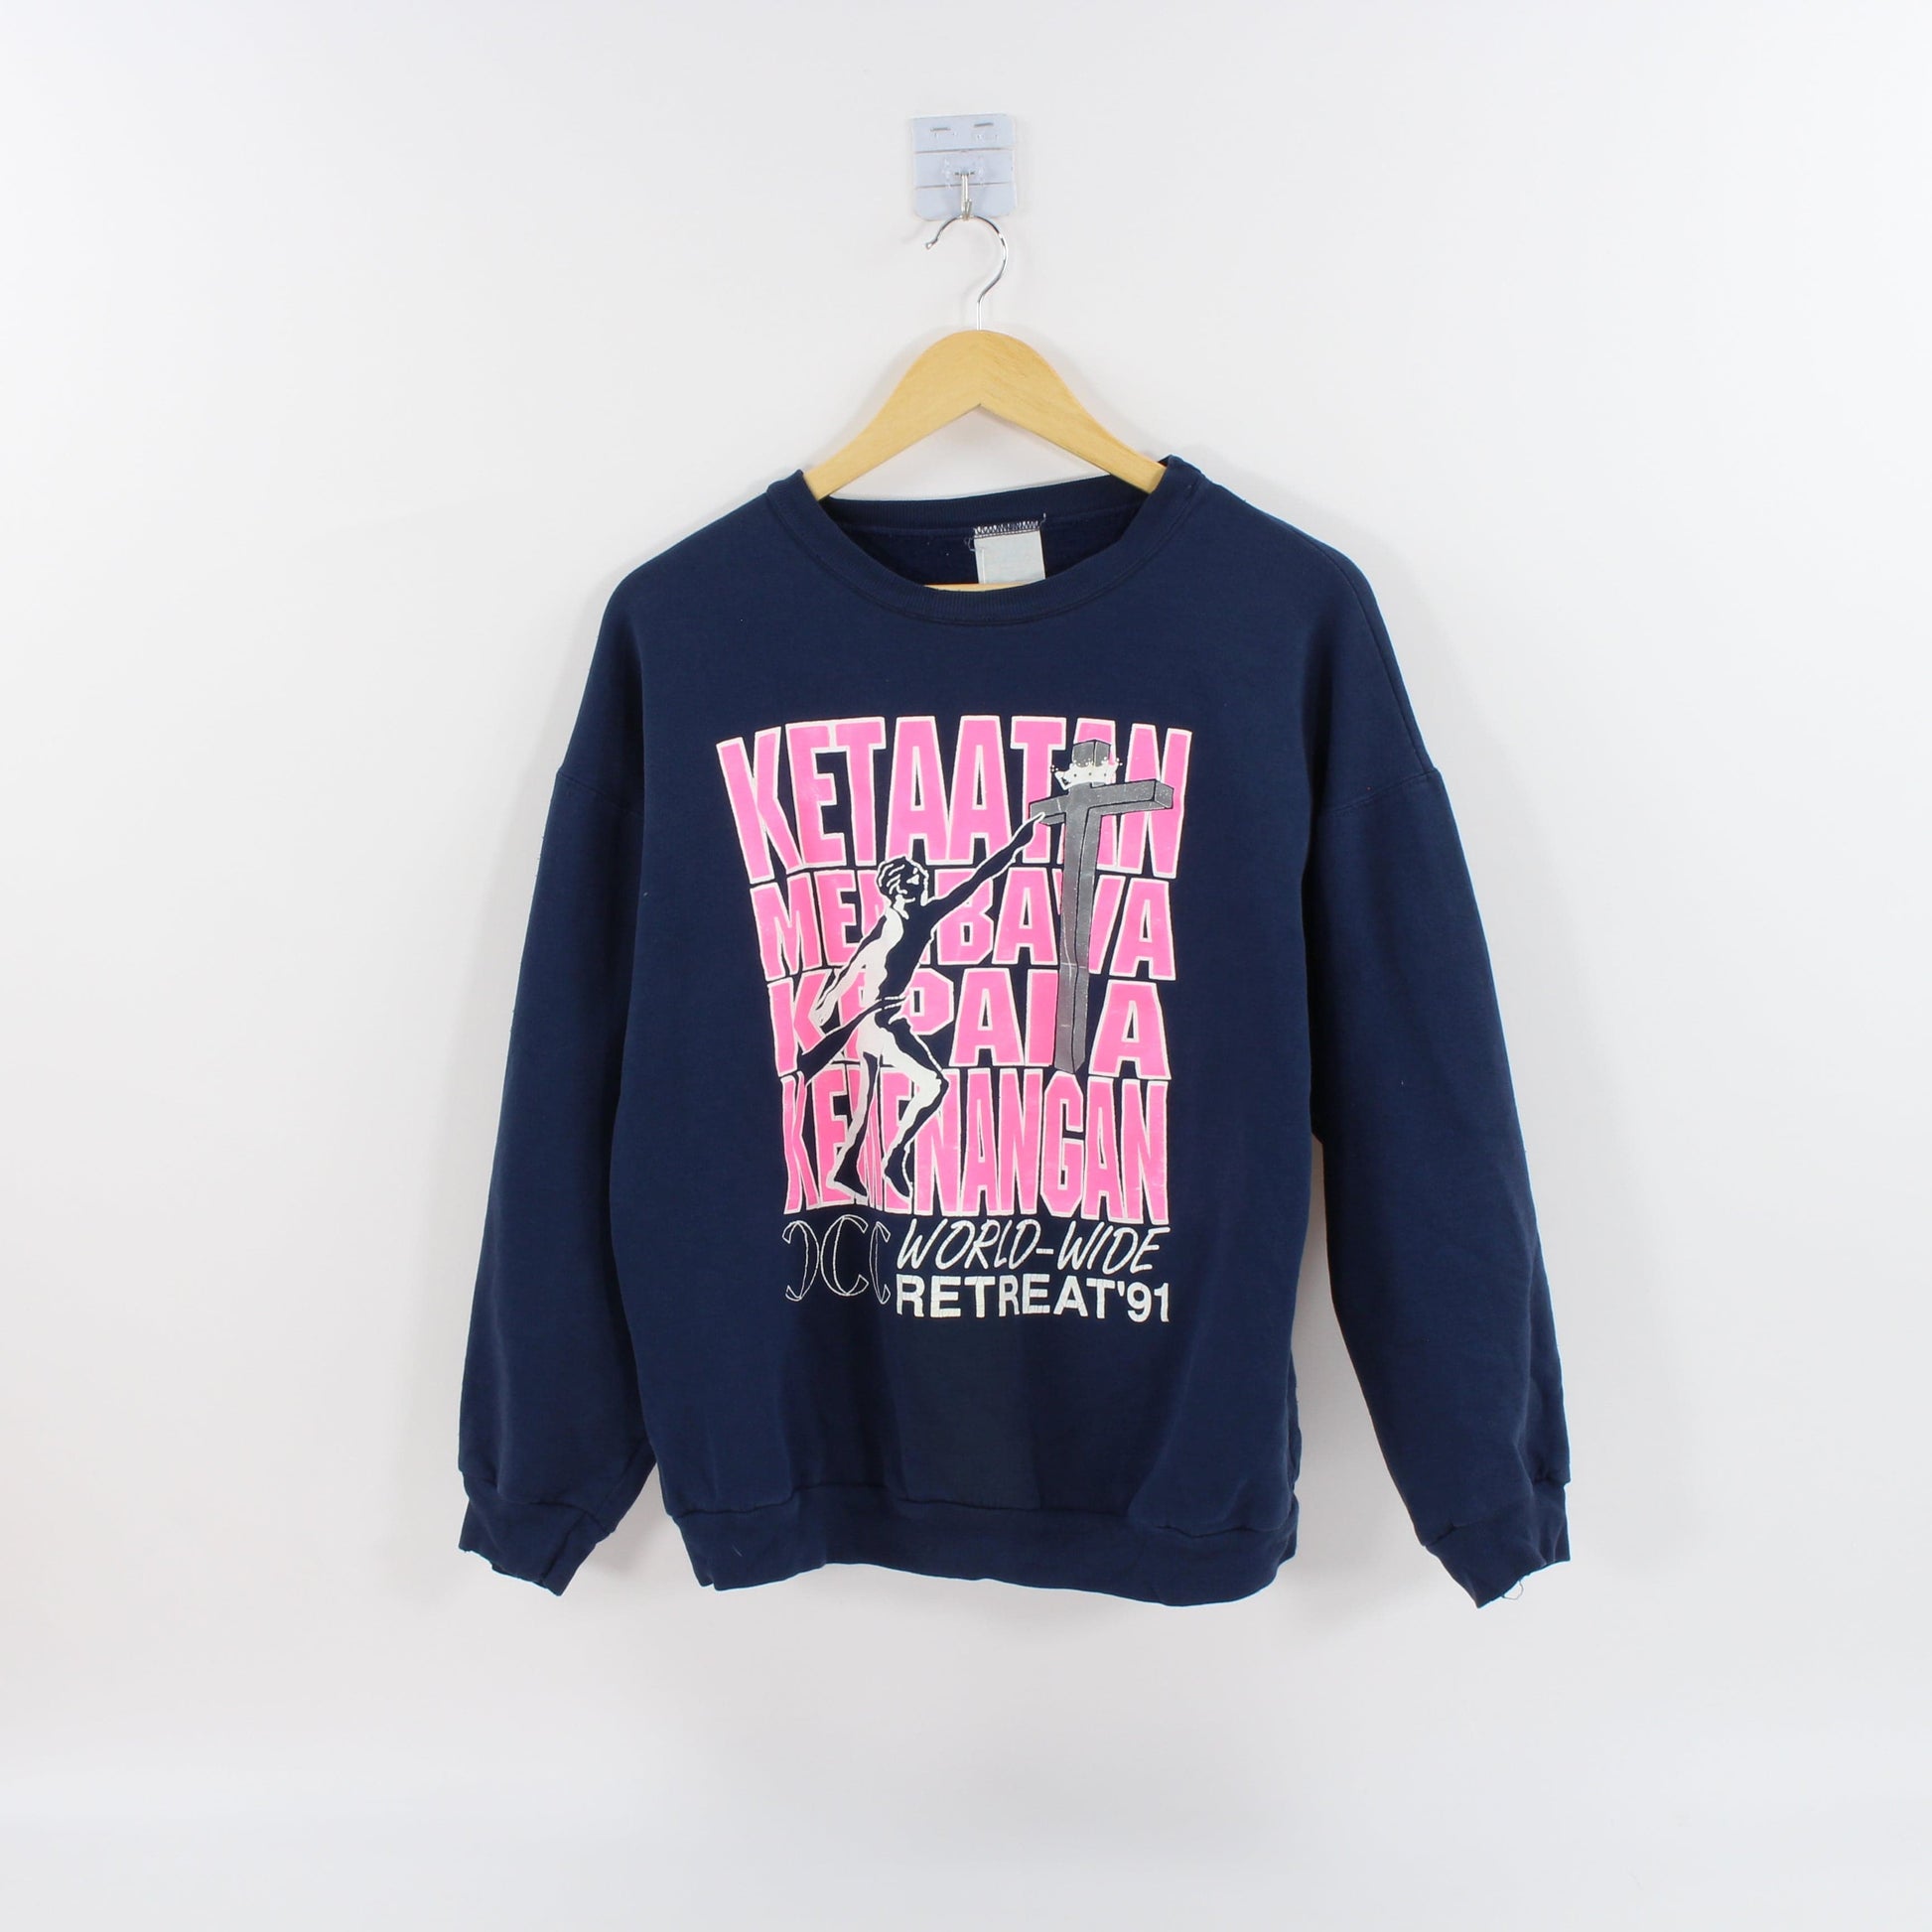 Other Vintage 1991 World Wide Retreat Sweatshirt Size Medium